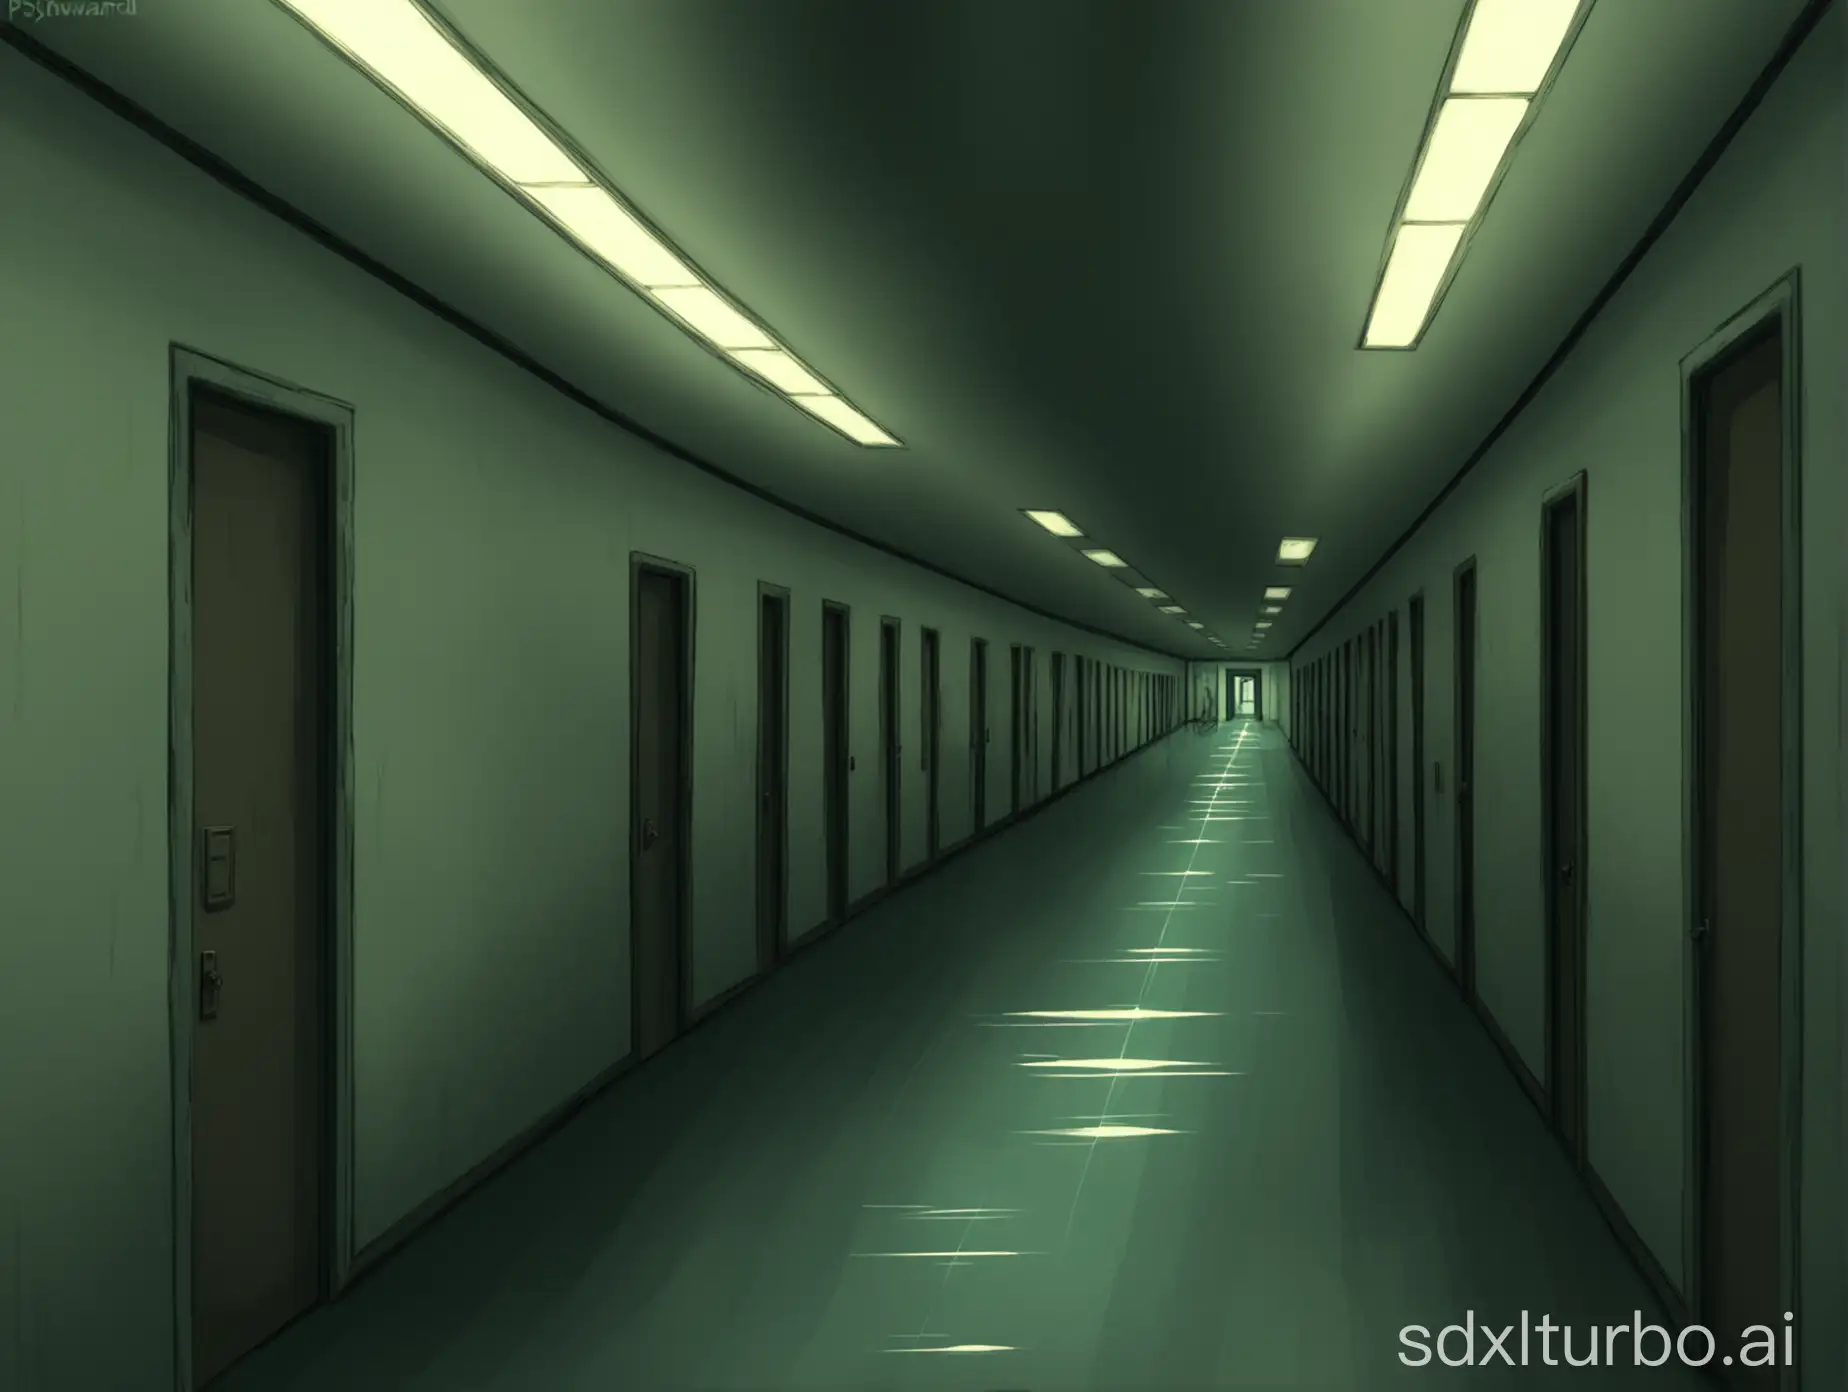 Hallway of psychward